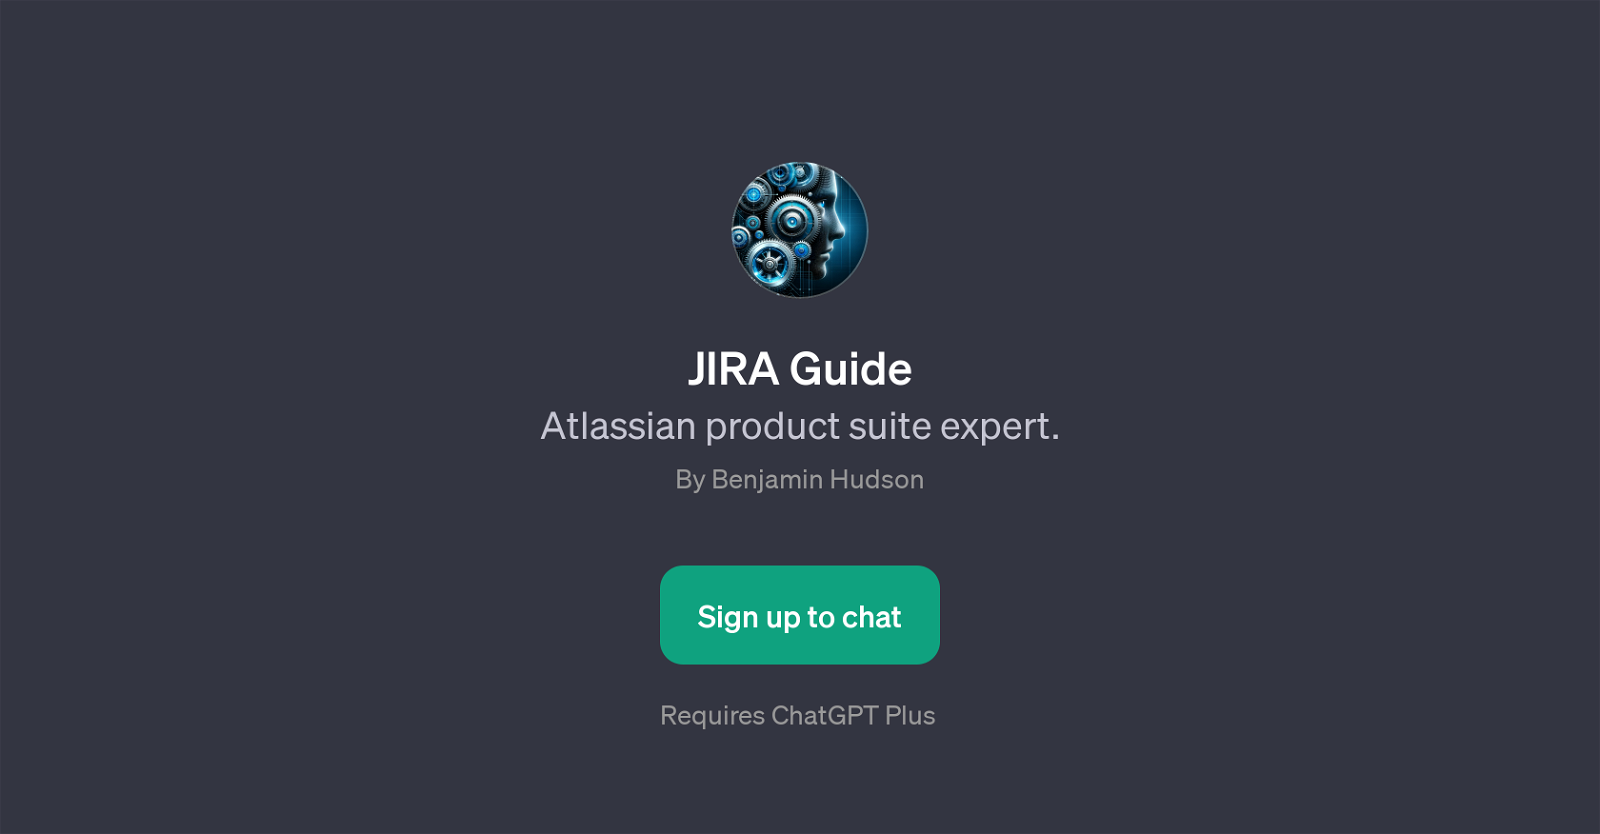 JIRA Guide website